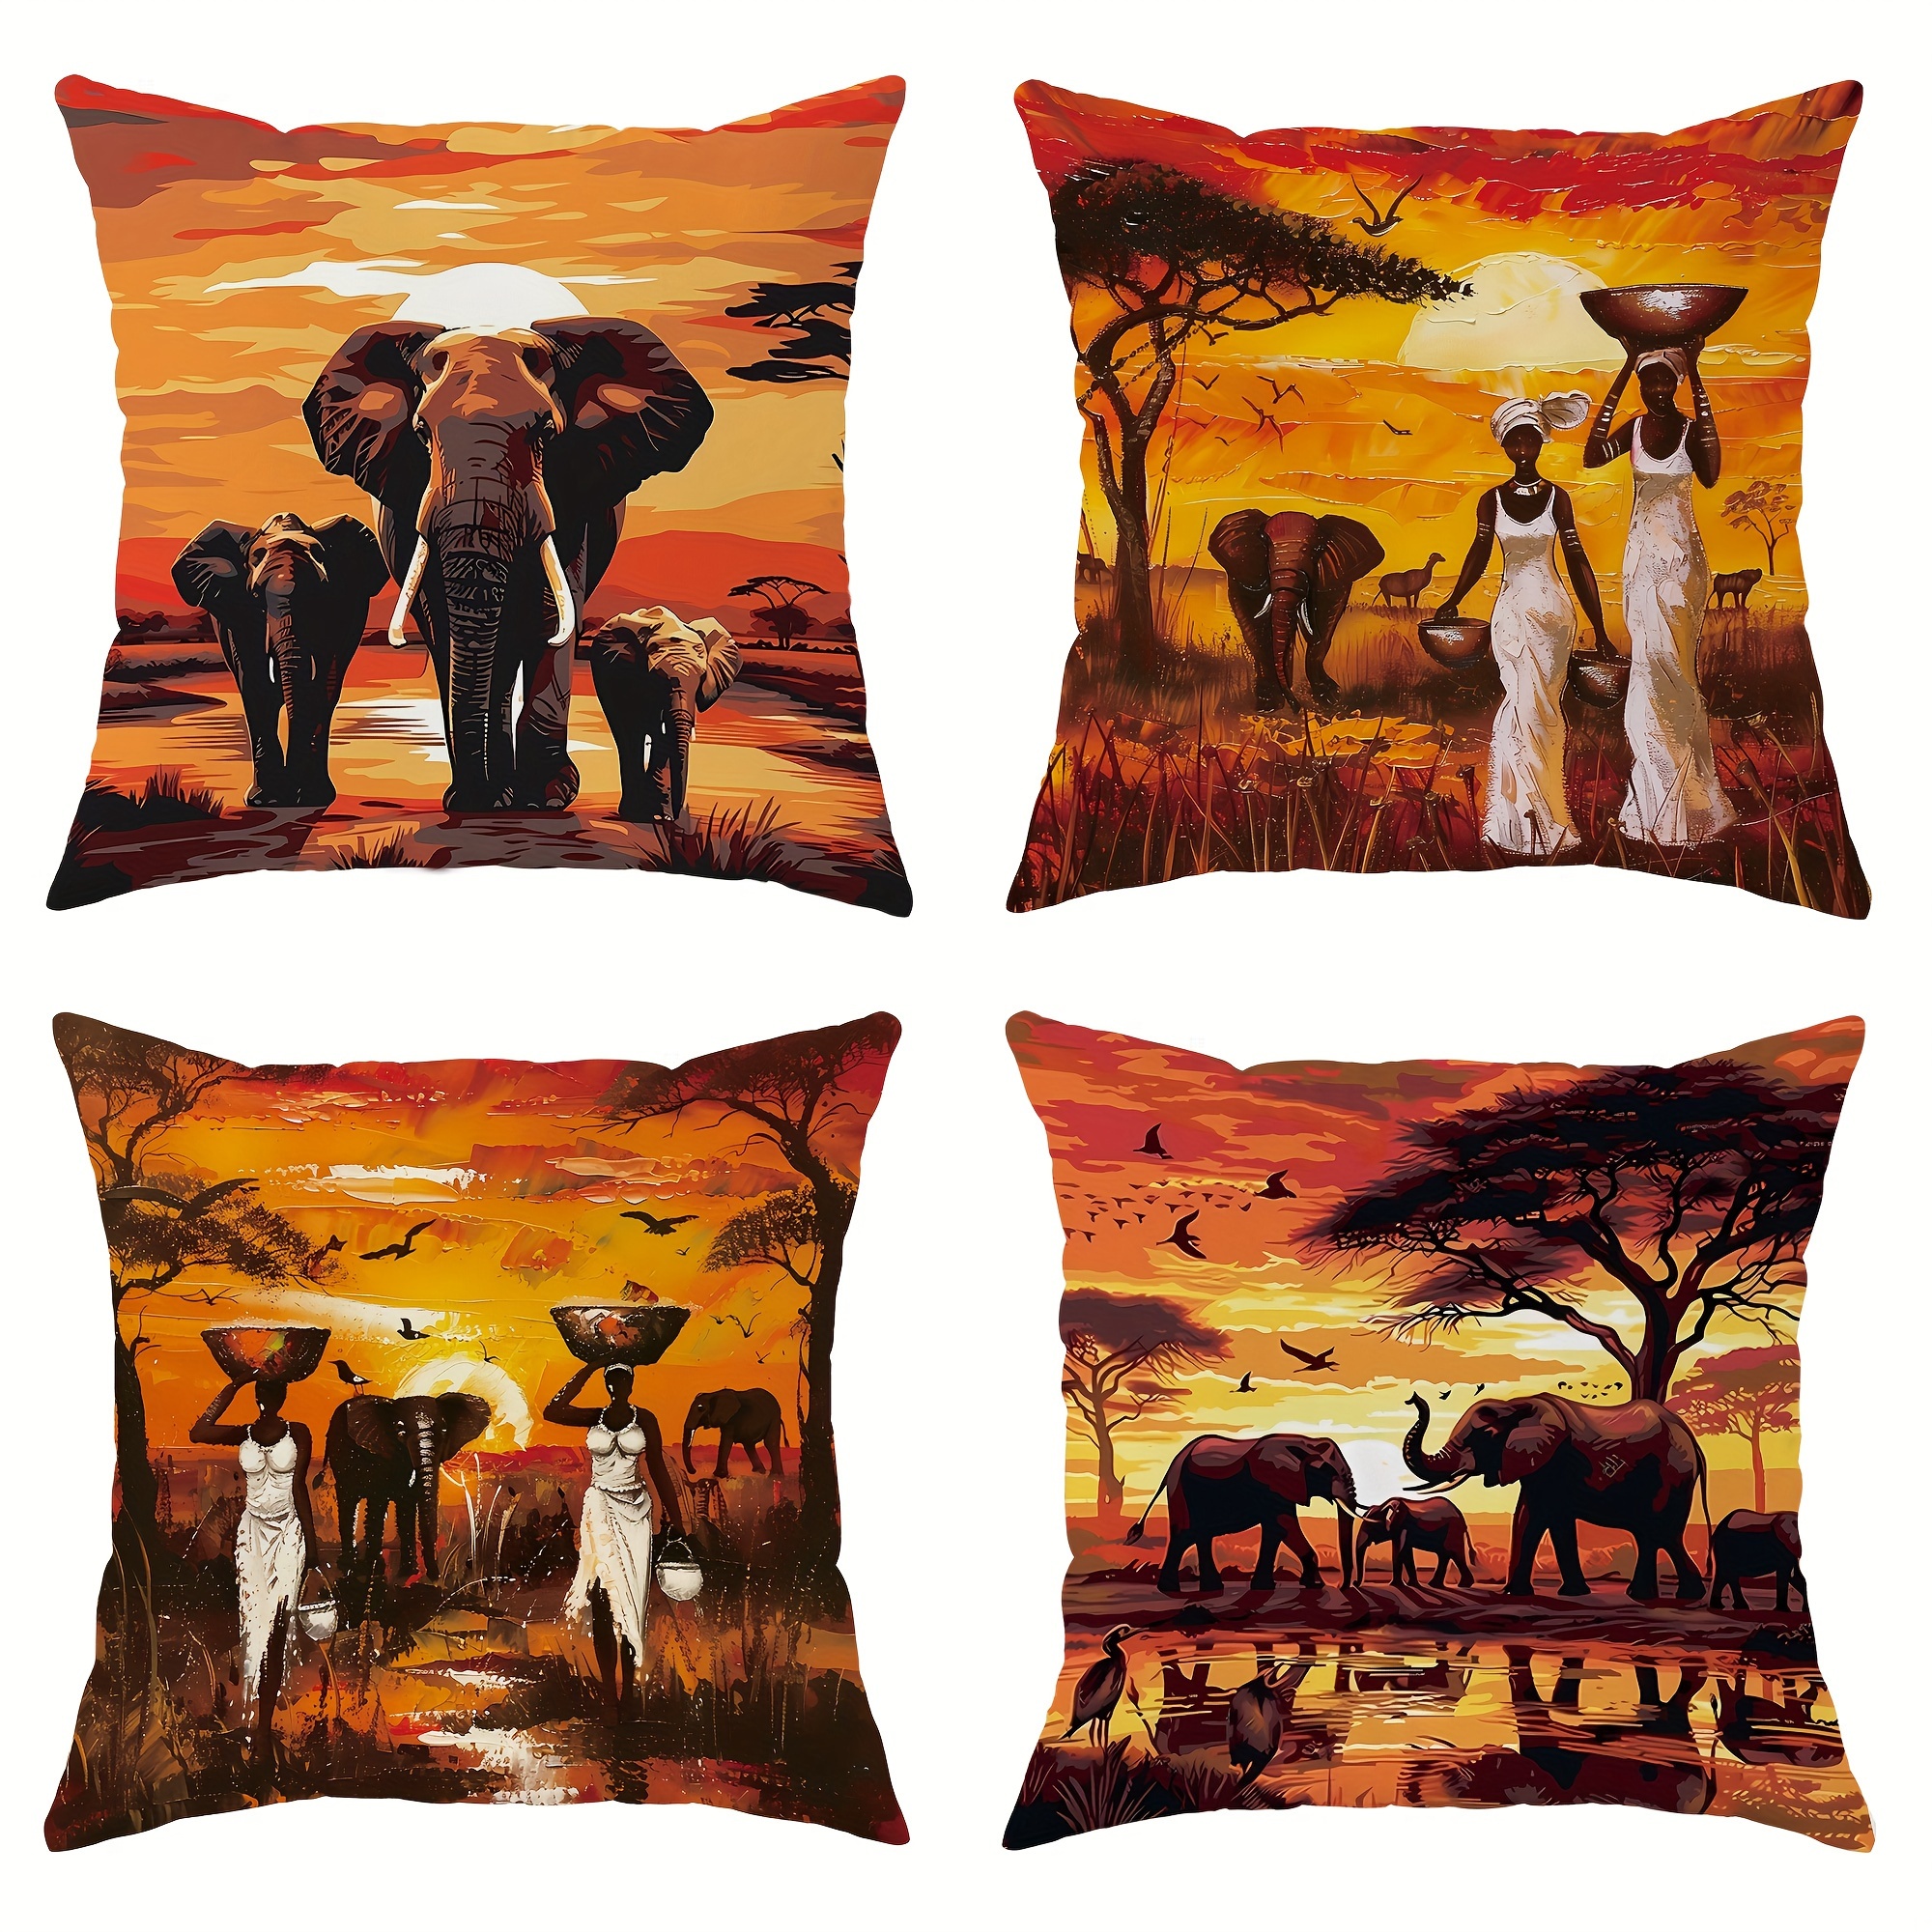 

4 housses de coussin en velours, motifs tribaux africains, éléphant noir, femmes, crépuscule orange, 18 x 18 pouces, pour la décoration du salon, de la chambre à coucher, du canapé et du lit.